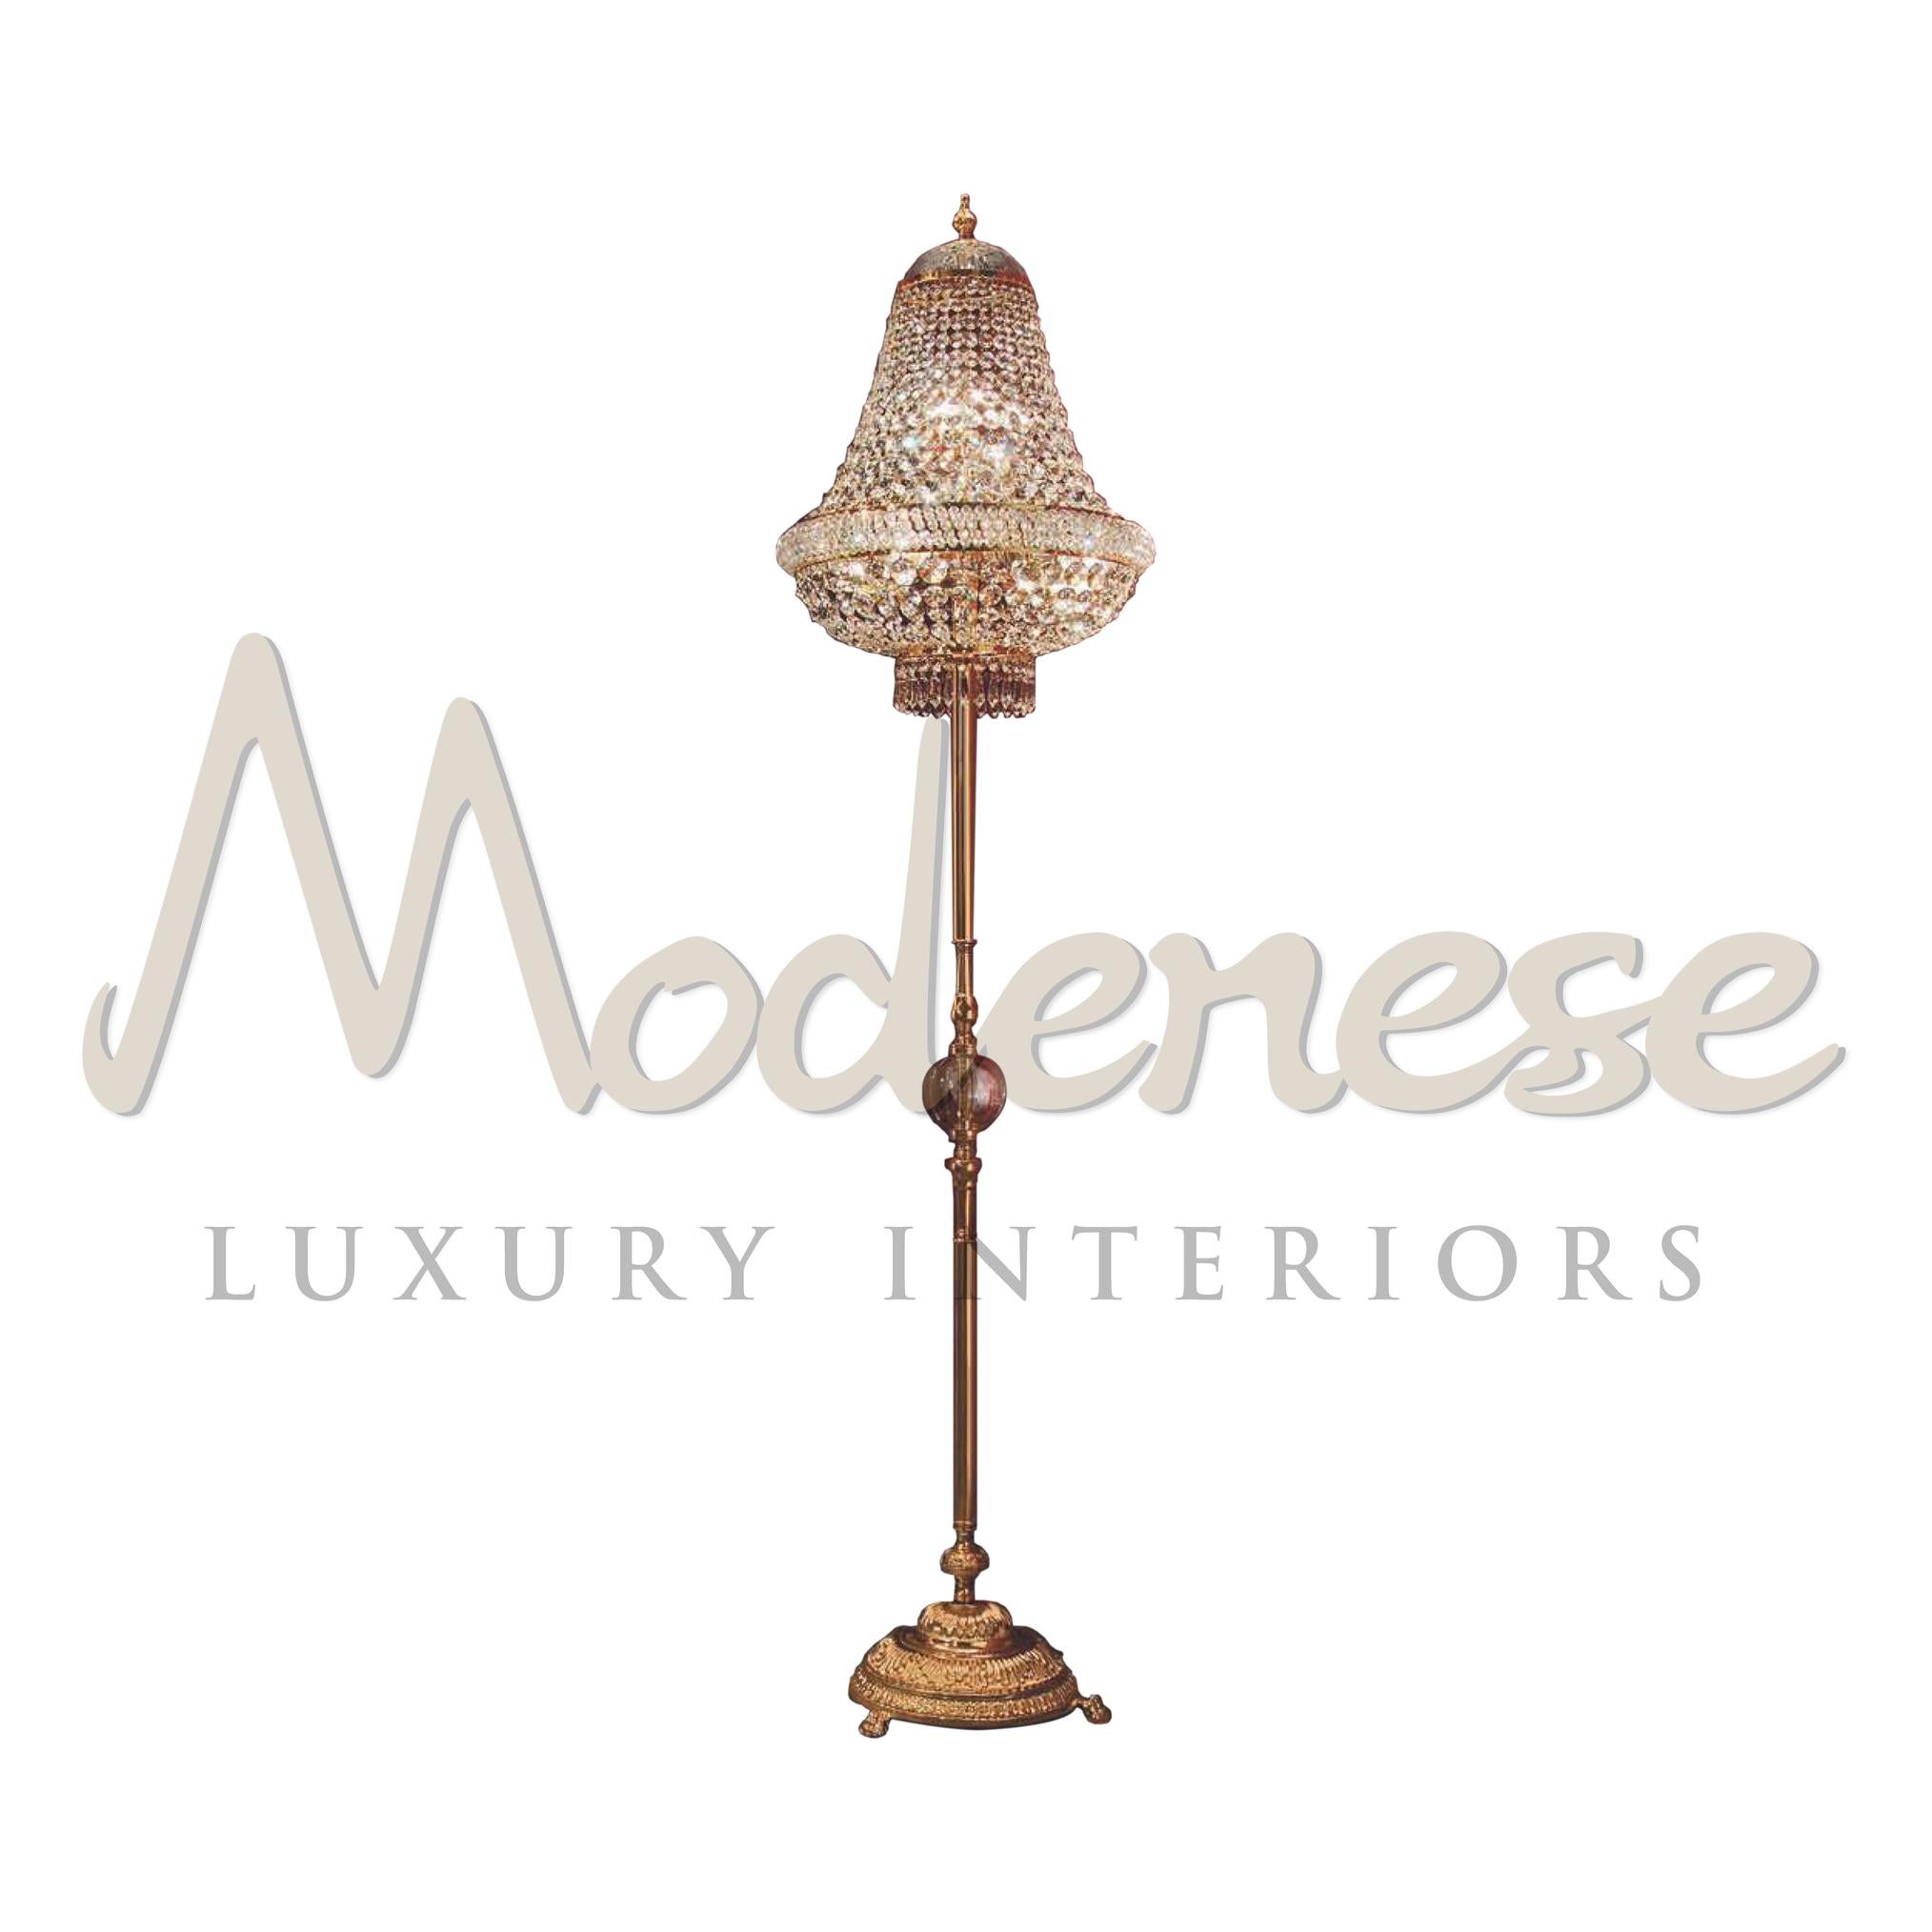 Le support de la lampe chevalet, fini en plaqué or 24kt et fabriqué à la main, est la base parfaite pour la grande lampe sur pied à 9 lumières, le tout assemblé avec du cristal scholer, par les intérieurs de luxe de Modenese Gastone. Ce modèle